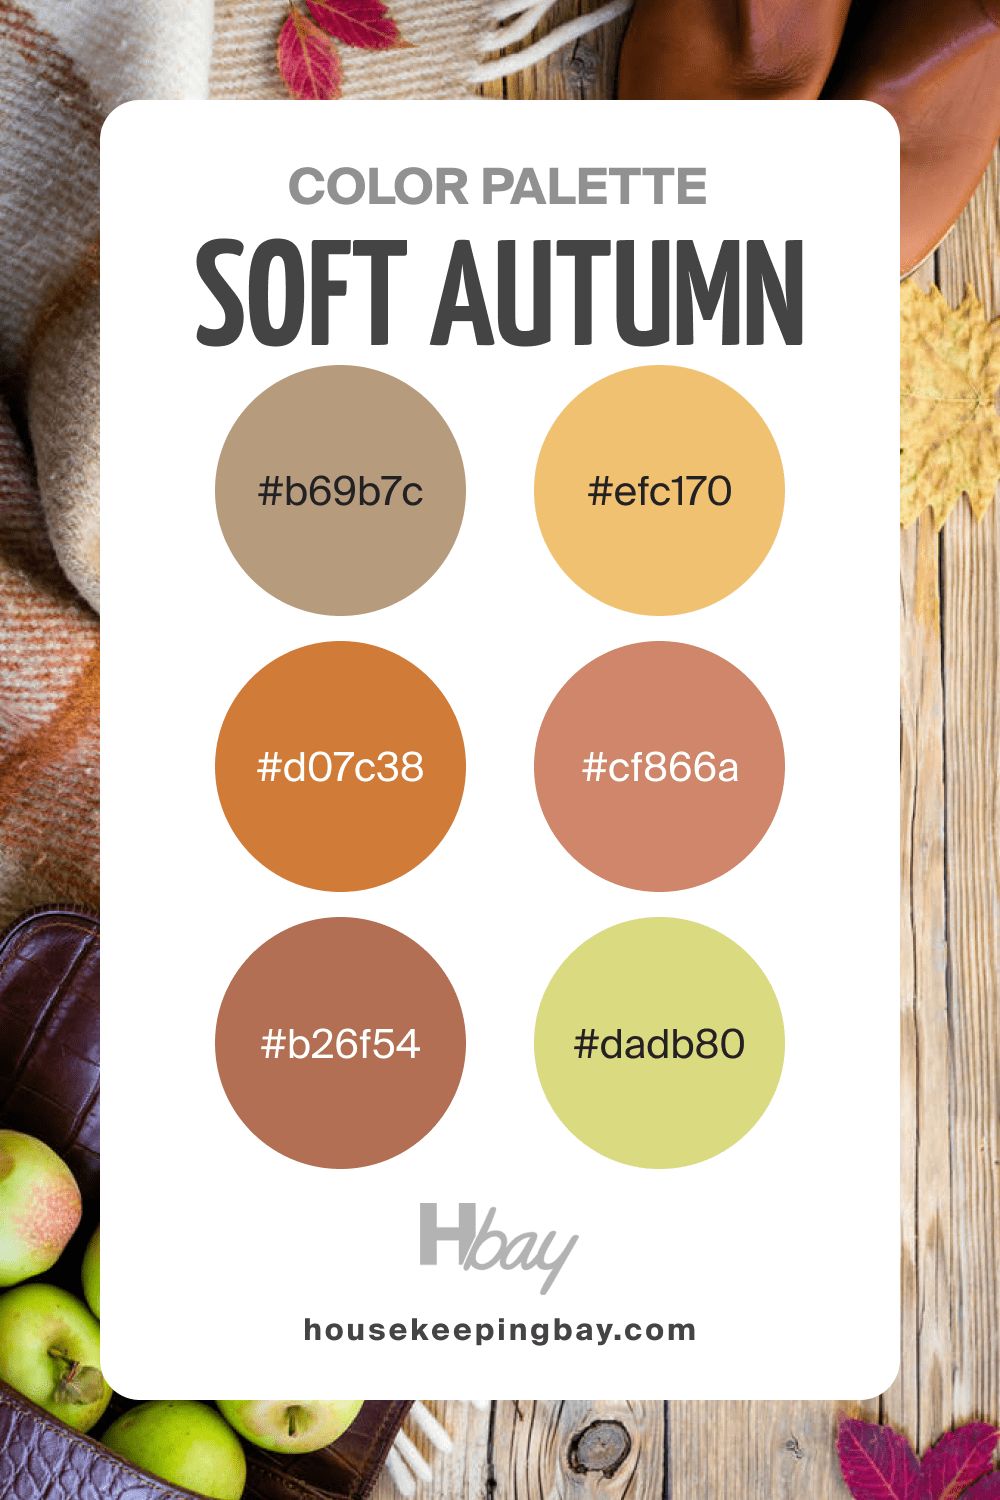 Autumn color palette soft